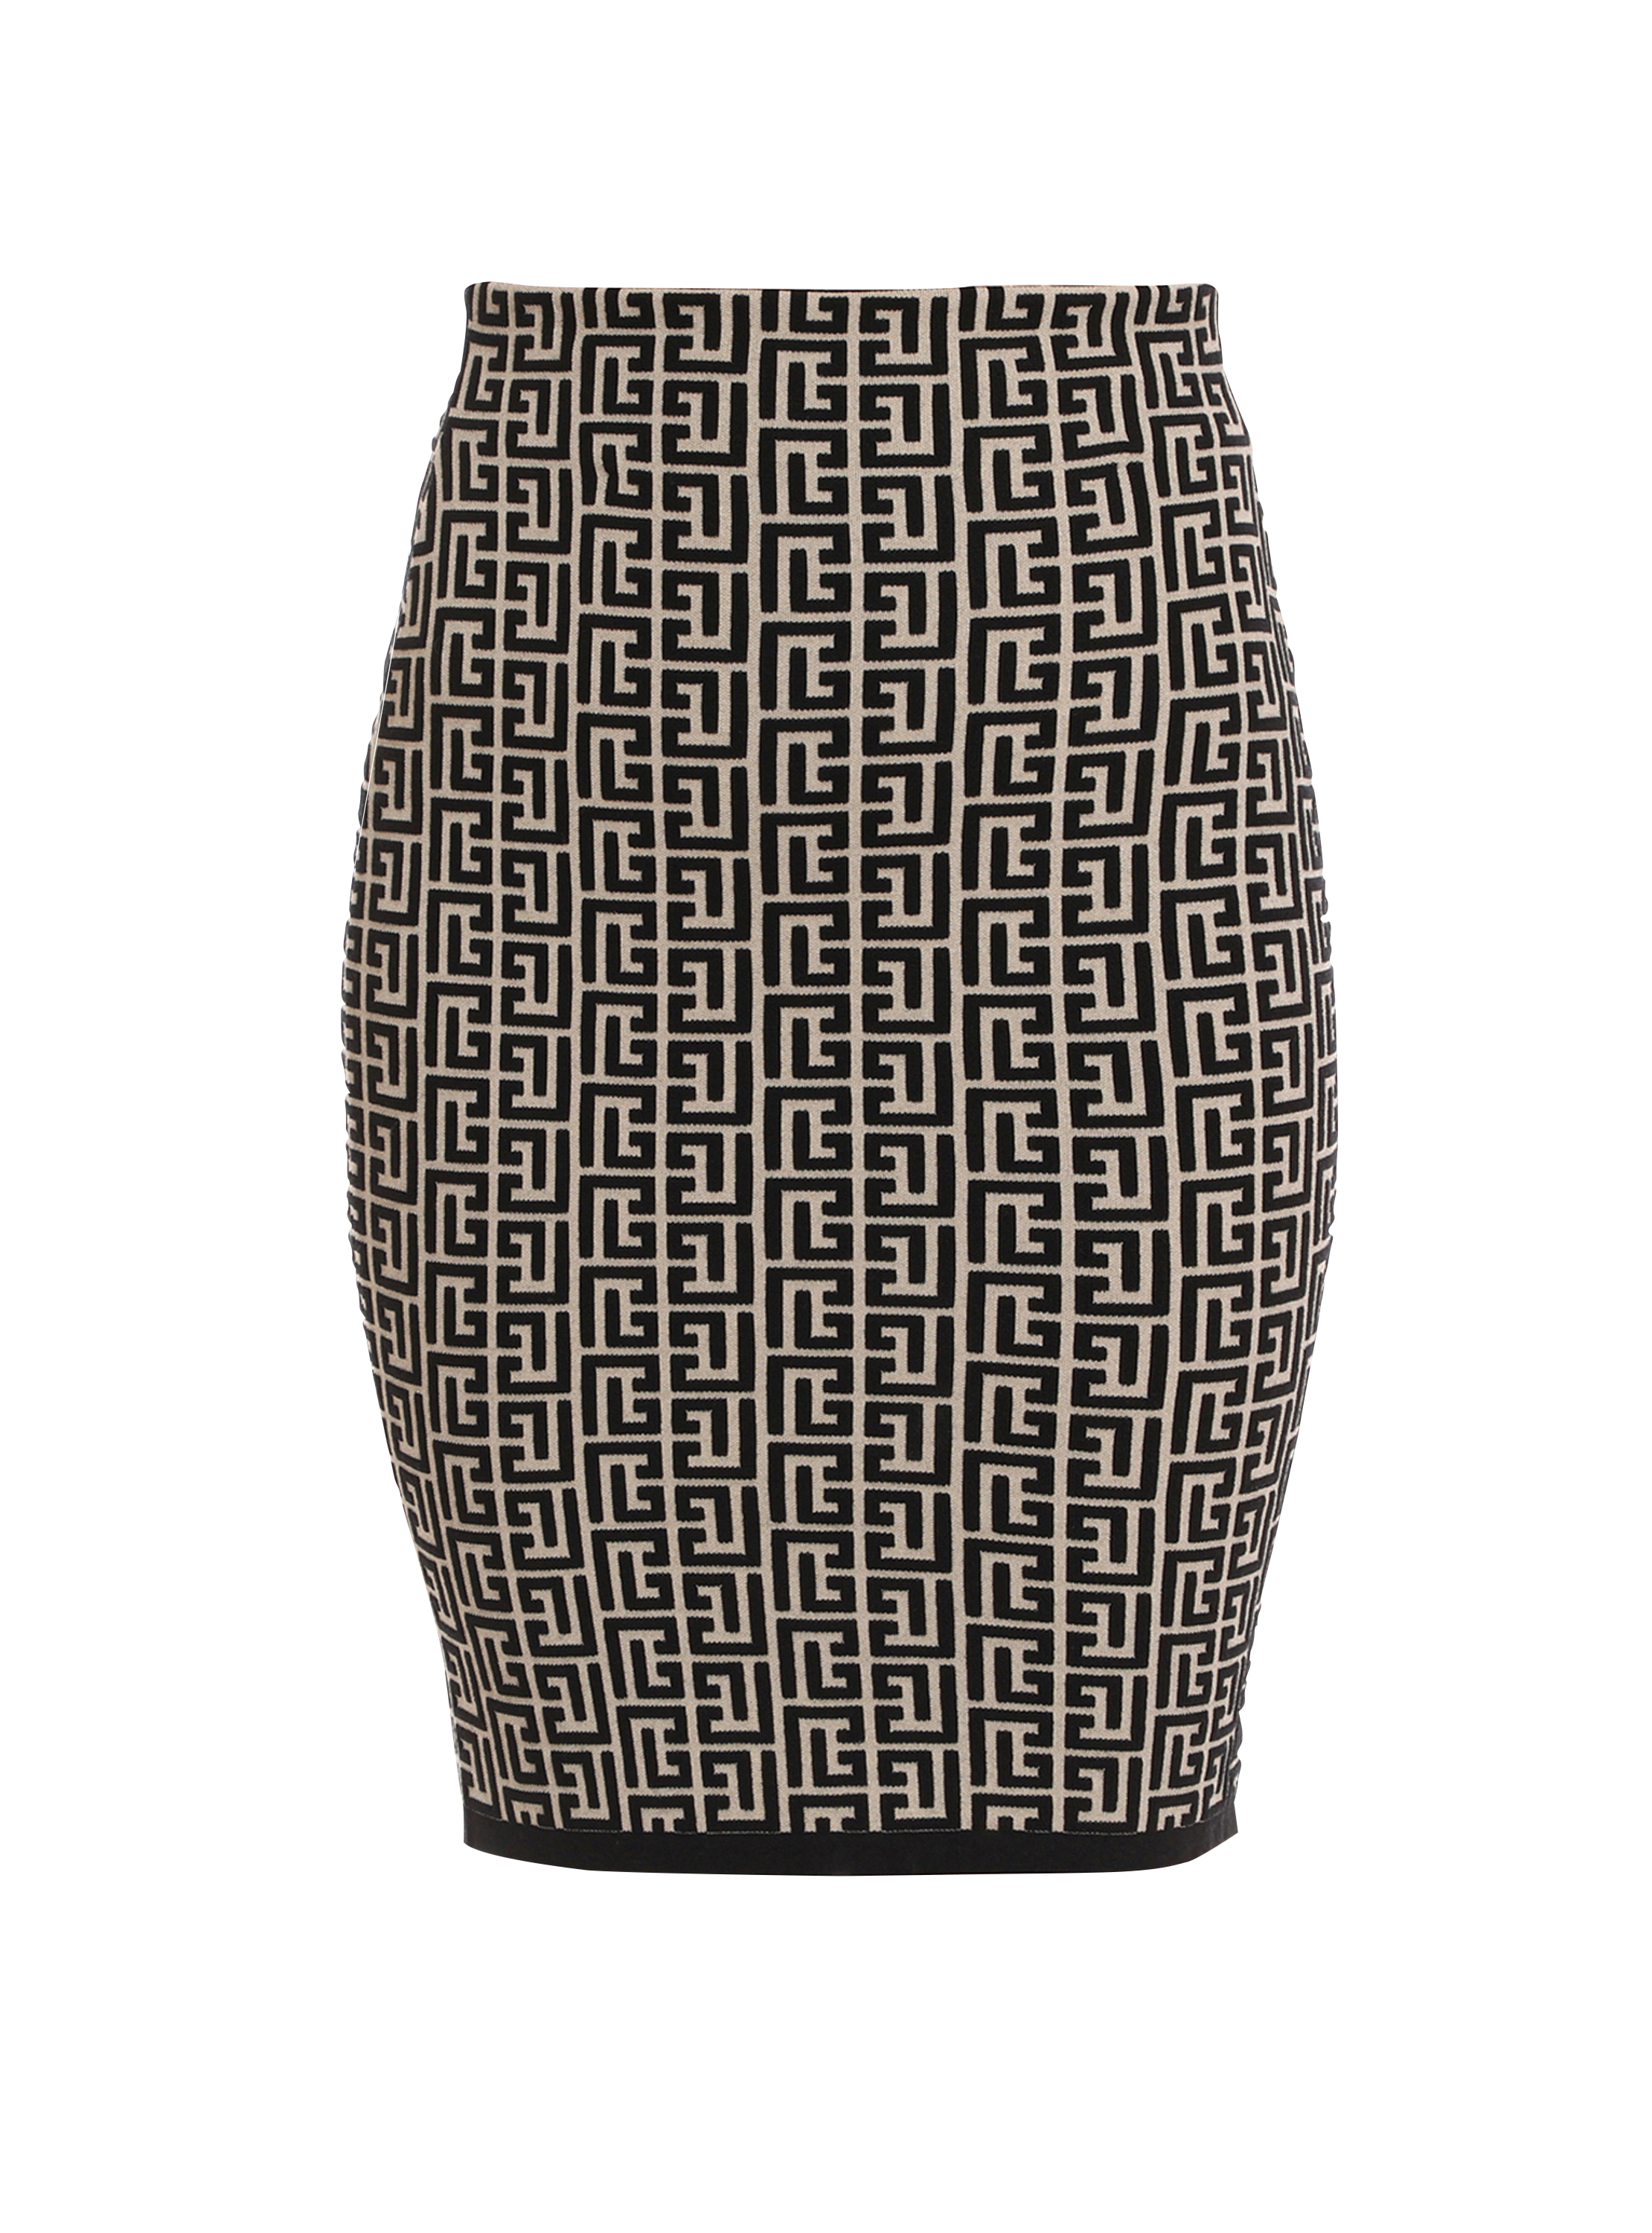 Balmain bicolor jacquard knit skirt